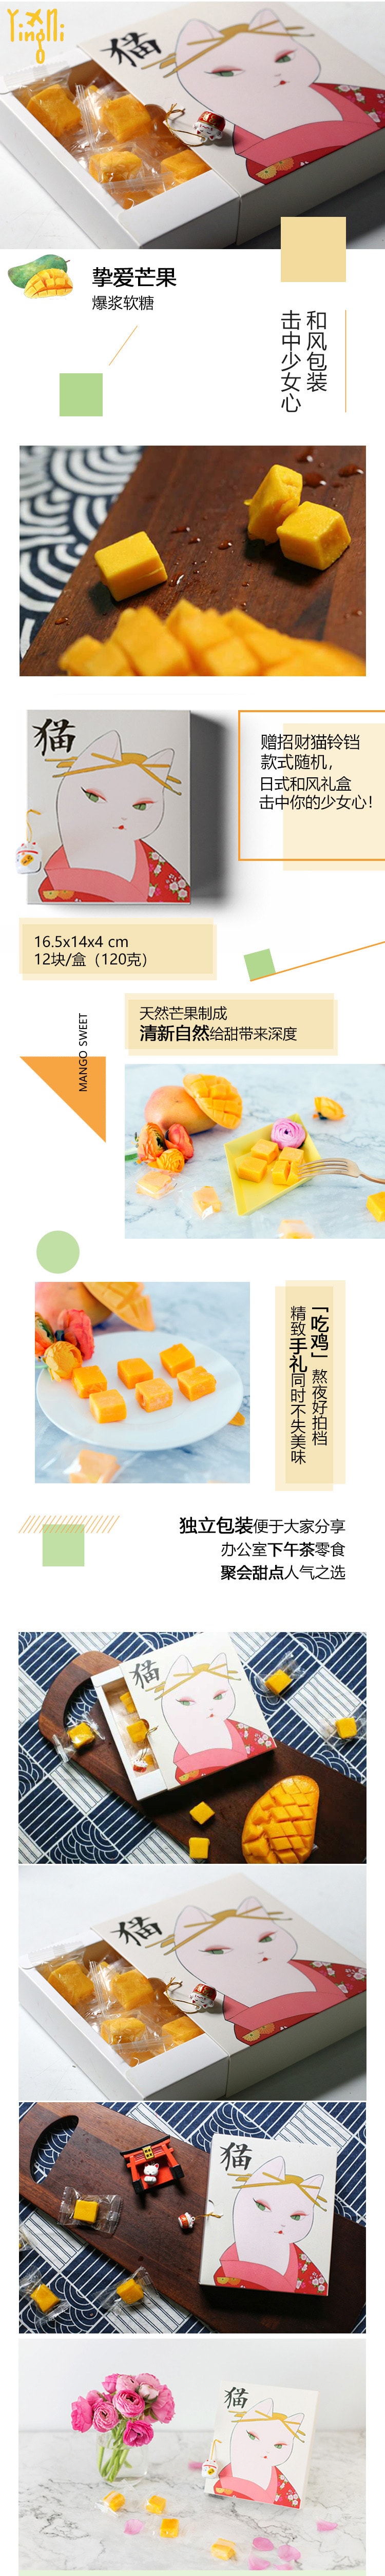 【中国直邮】英尼 爆浆芒果软糖水果糖120g/盒